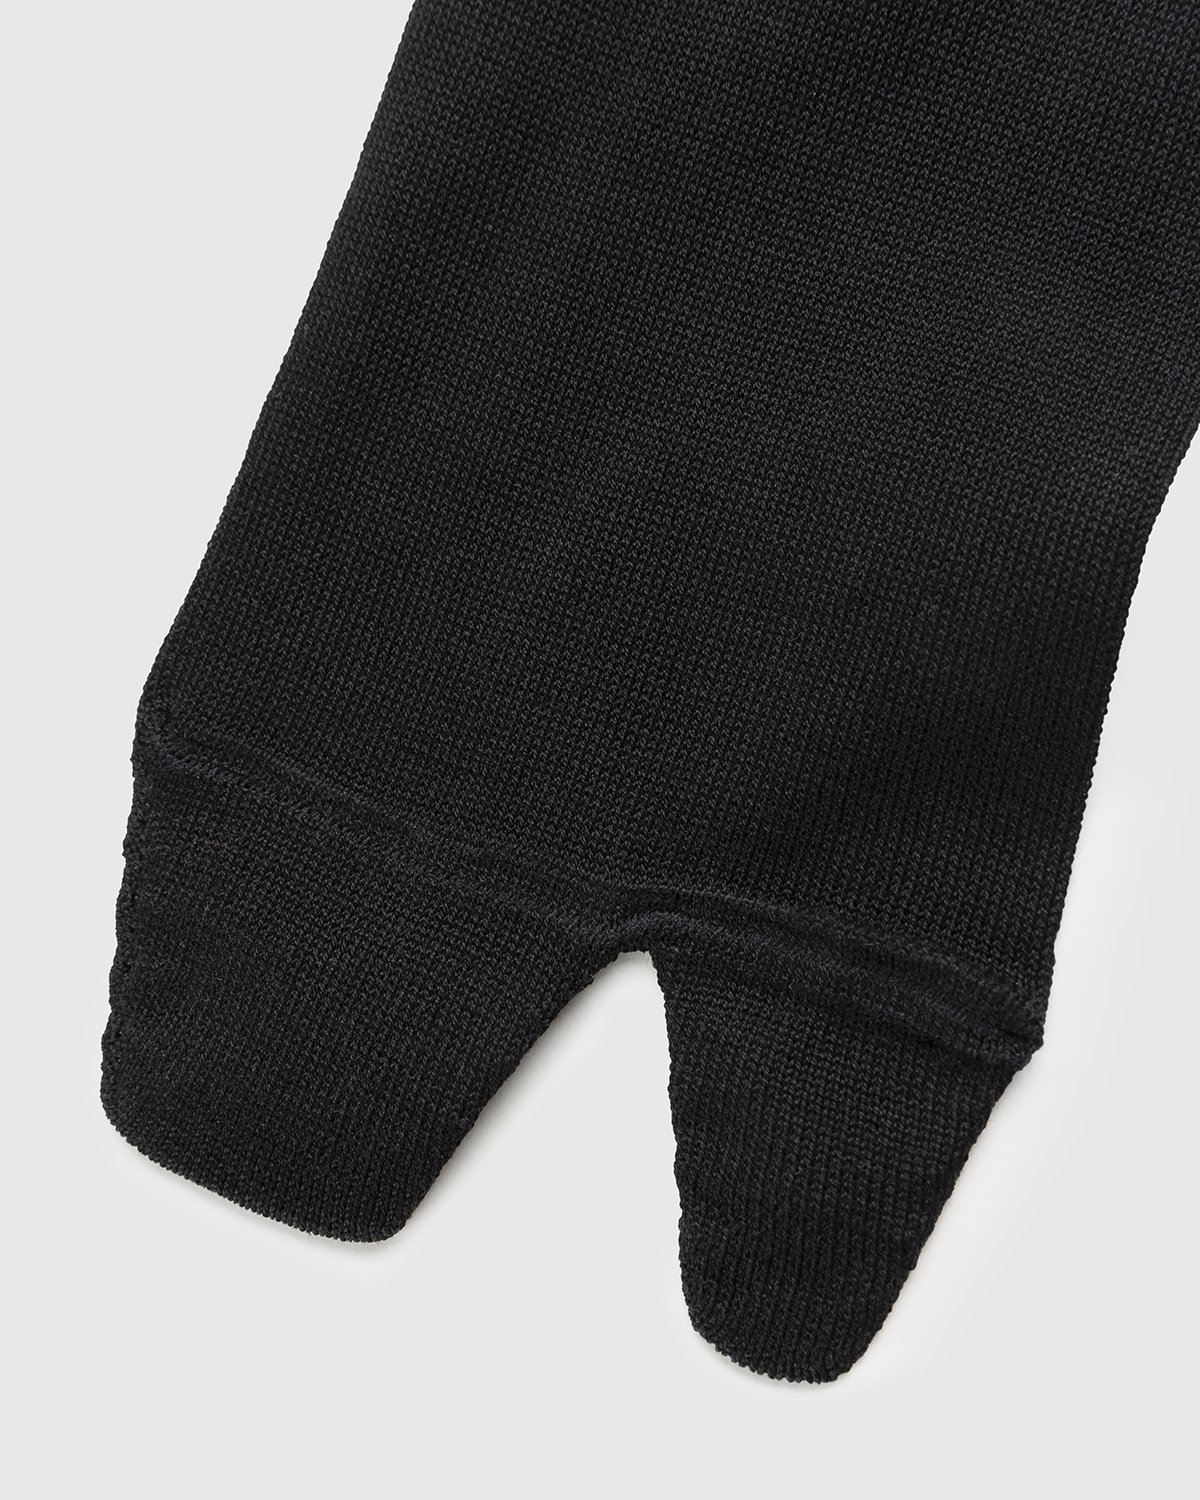 Maison Margiela - Tabi Socks Black - Accessories - Black - Image 3